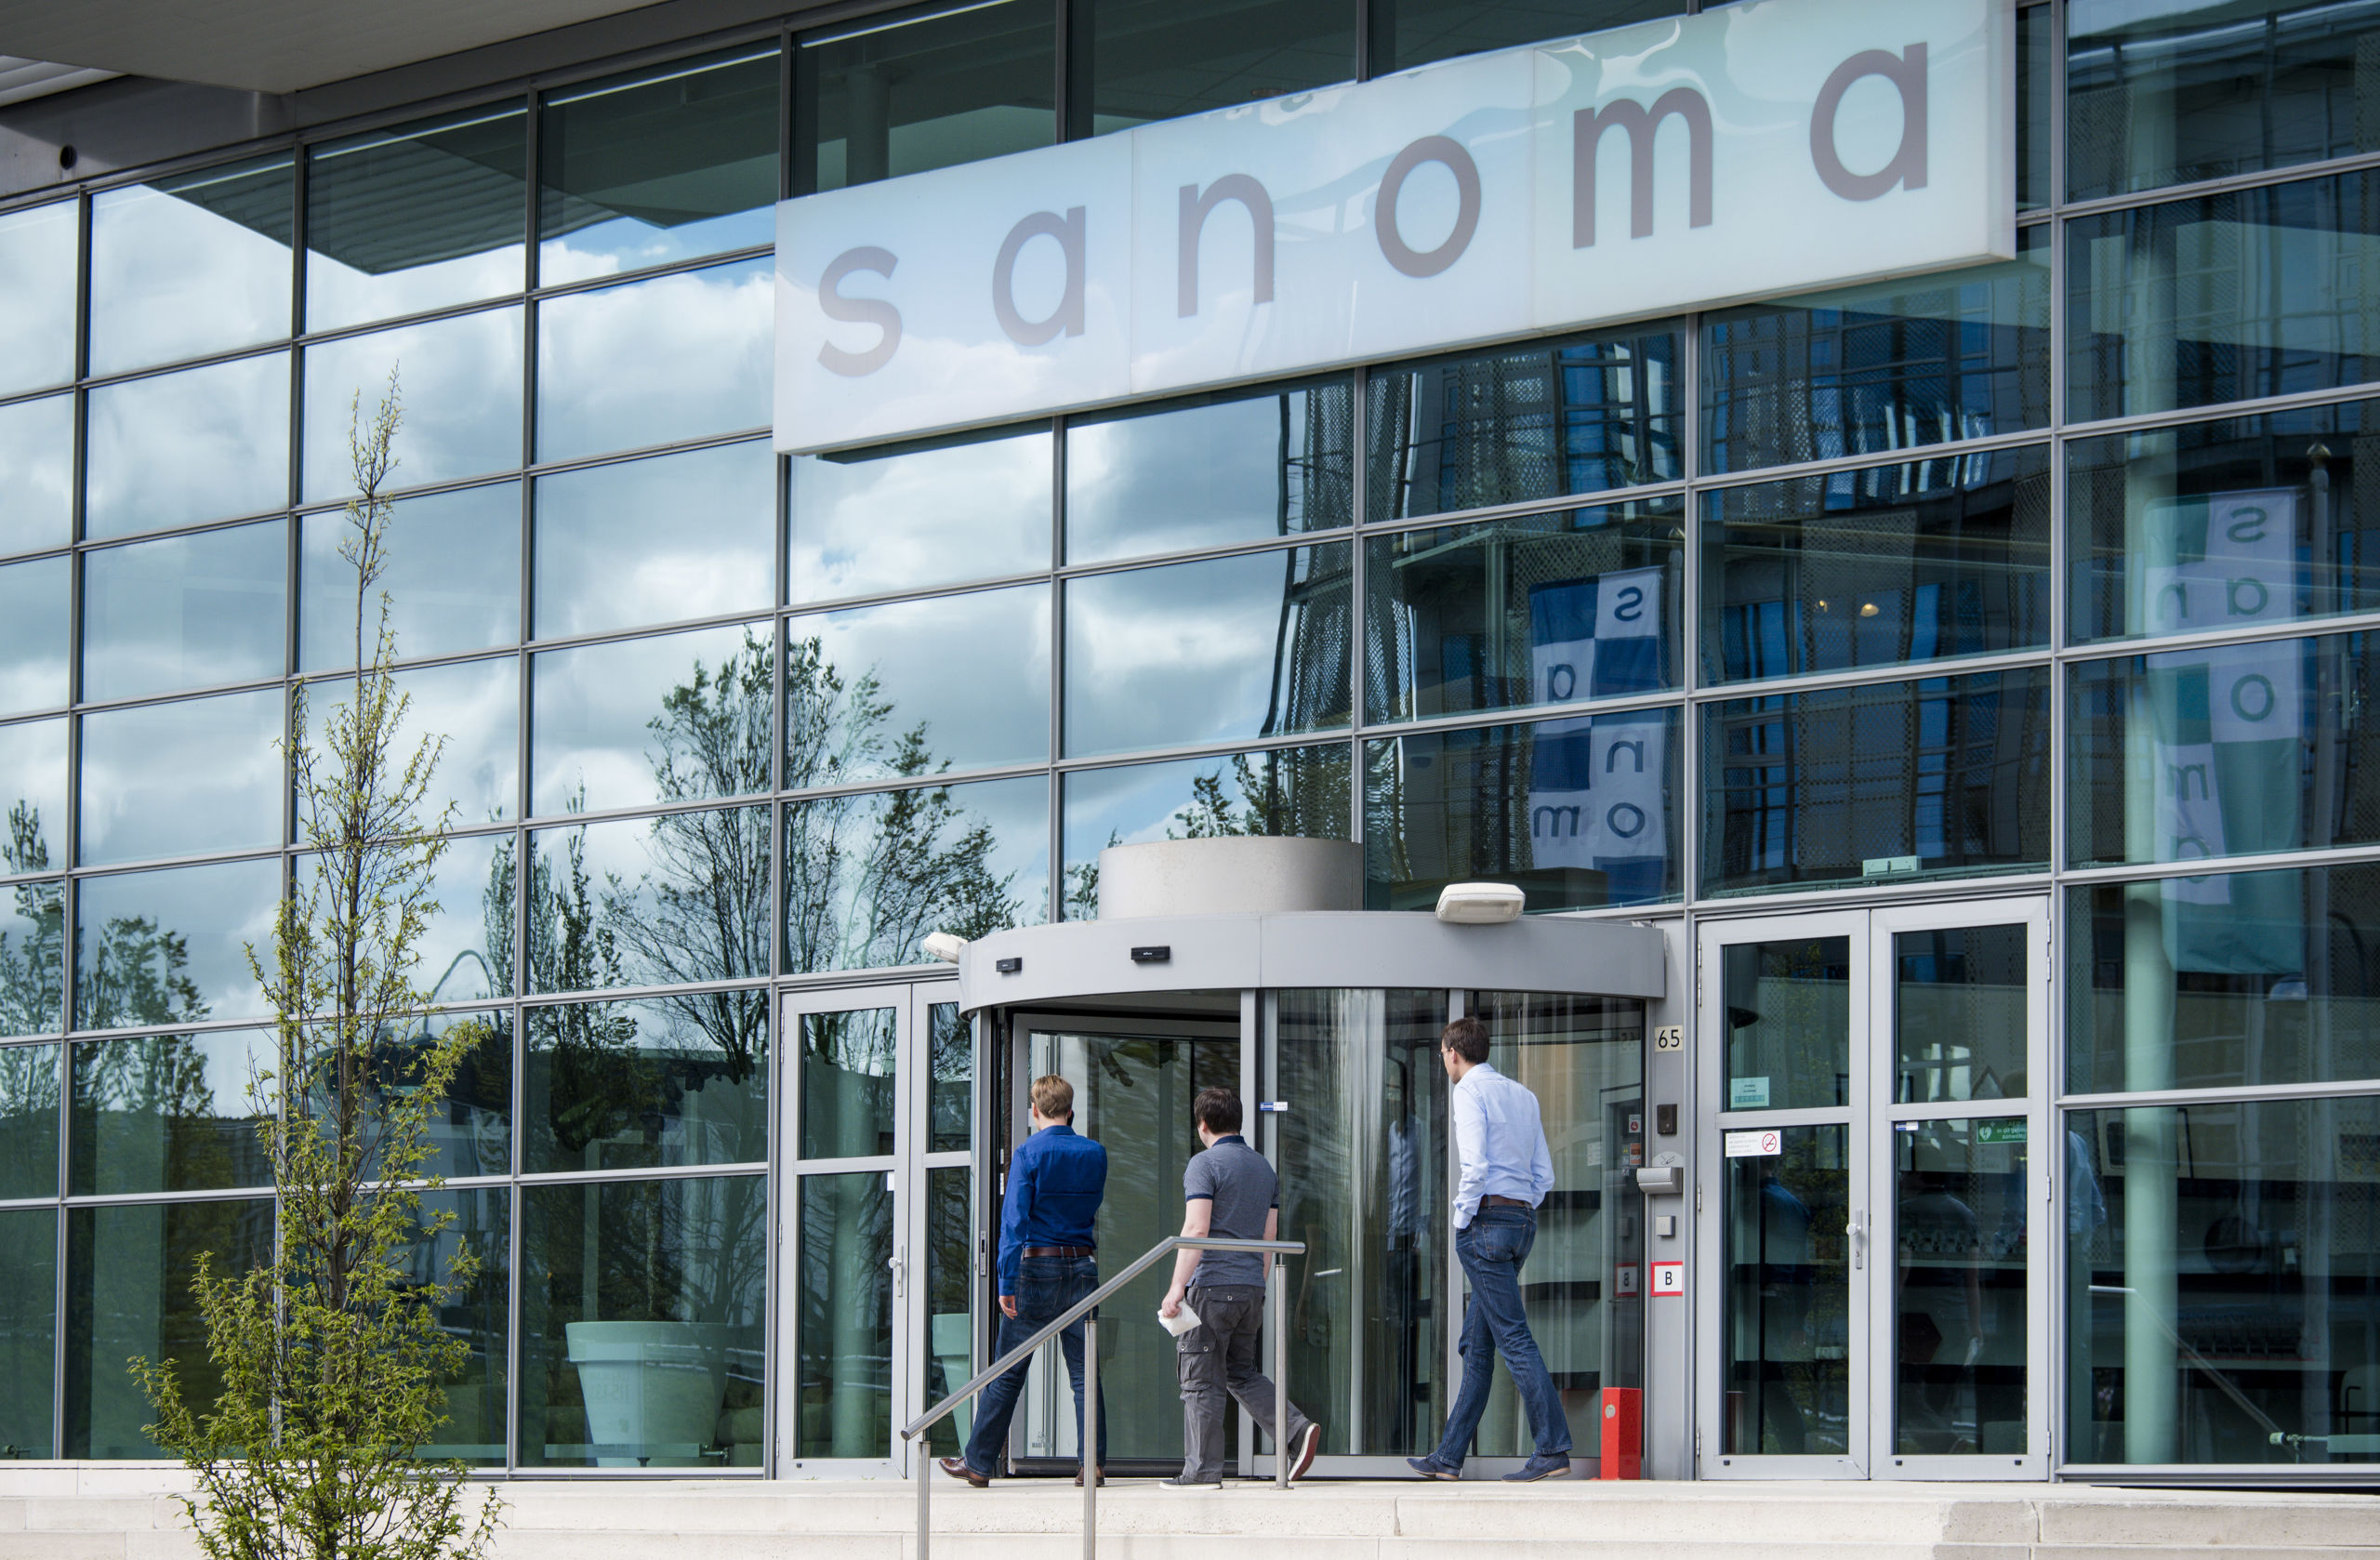 Uitgeversconcern Sanoma verkoopt voor 460 miljoen euro al zijn Nederlandse activiteiten aan DPG Media.